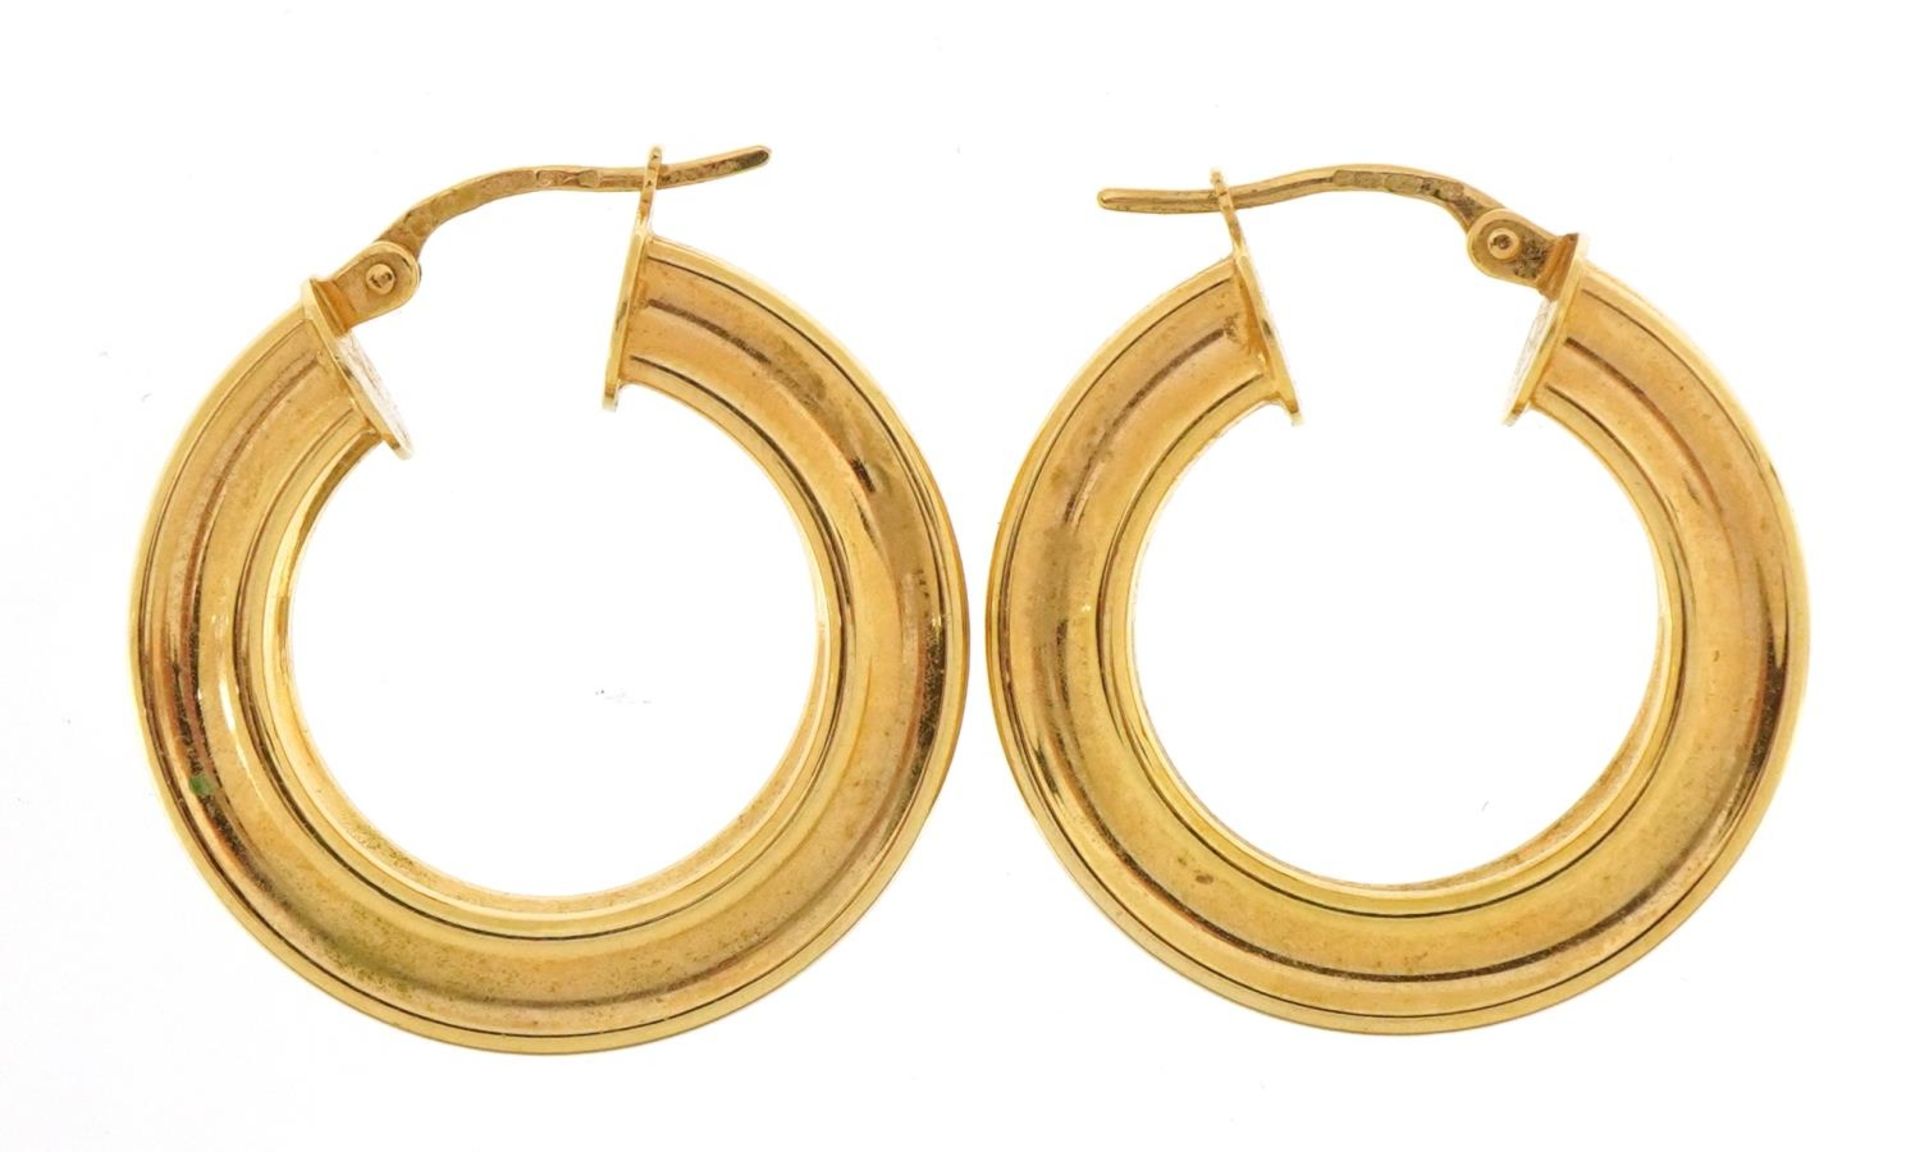 Pair of 9ct gold hoop earrings, 2.4cm in diameter, 3.8g - Image 2 of 3